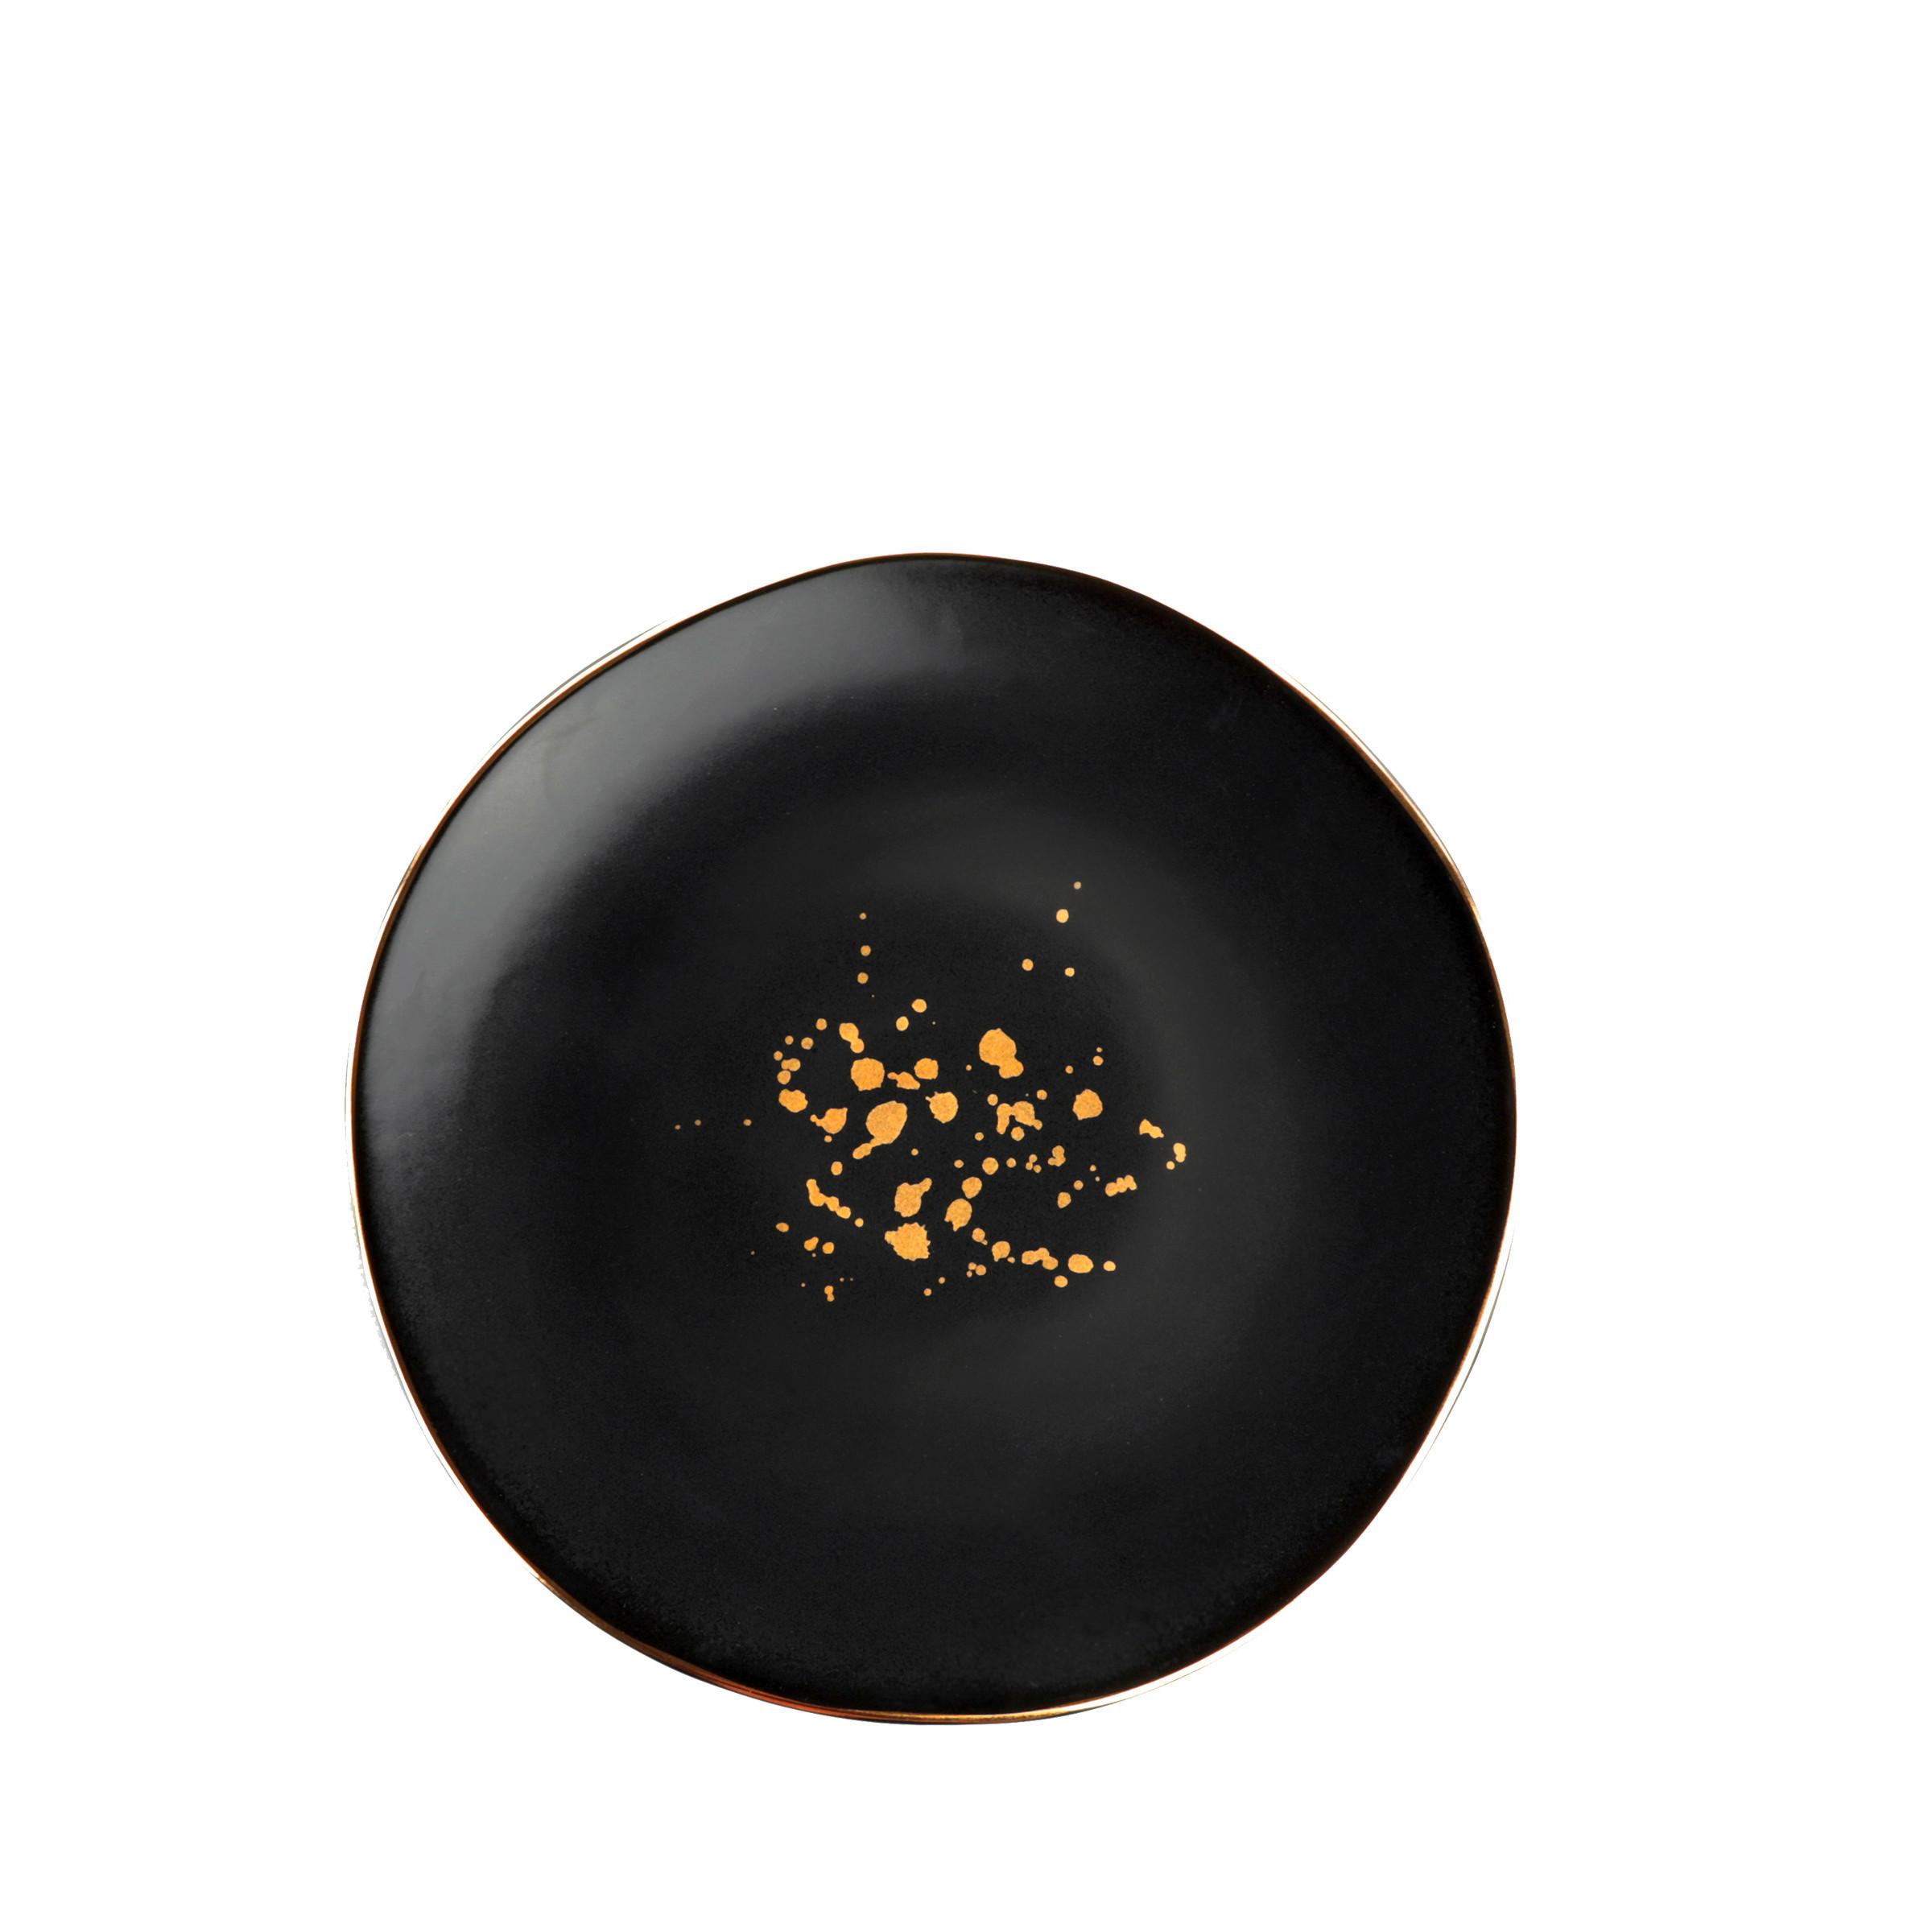 Dezertní Talířek Onix - černá/barvy zlata, Moderní, keramika (20,5cm) - Premium Living